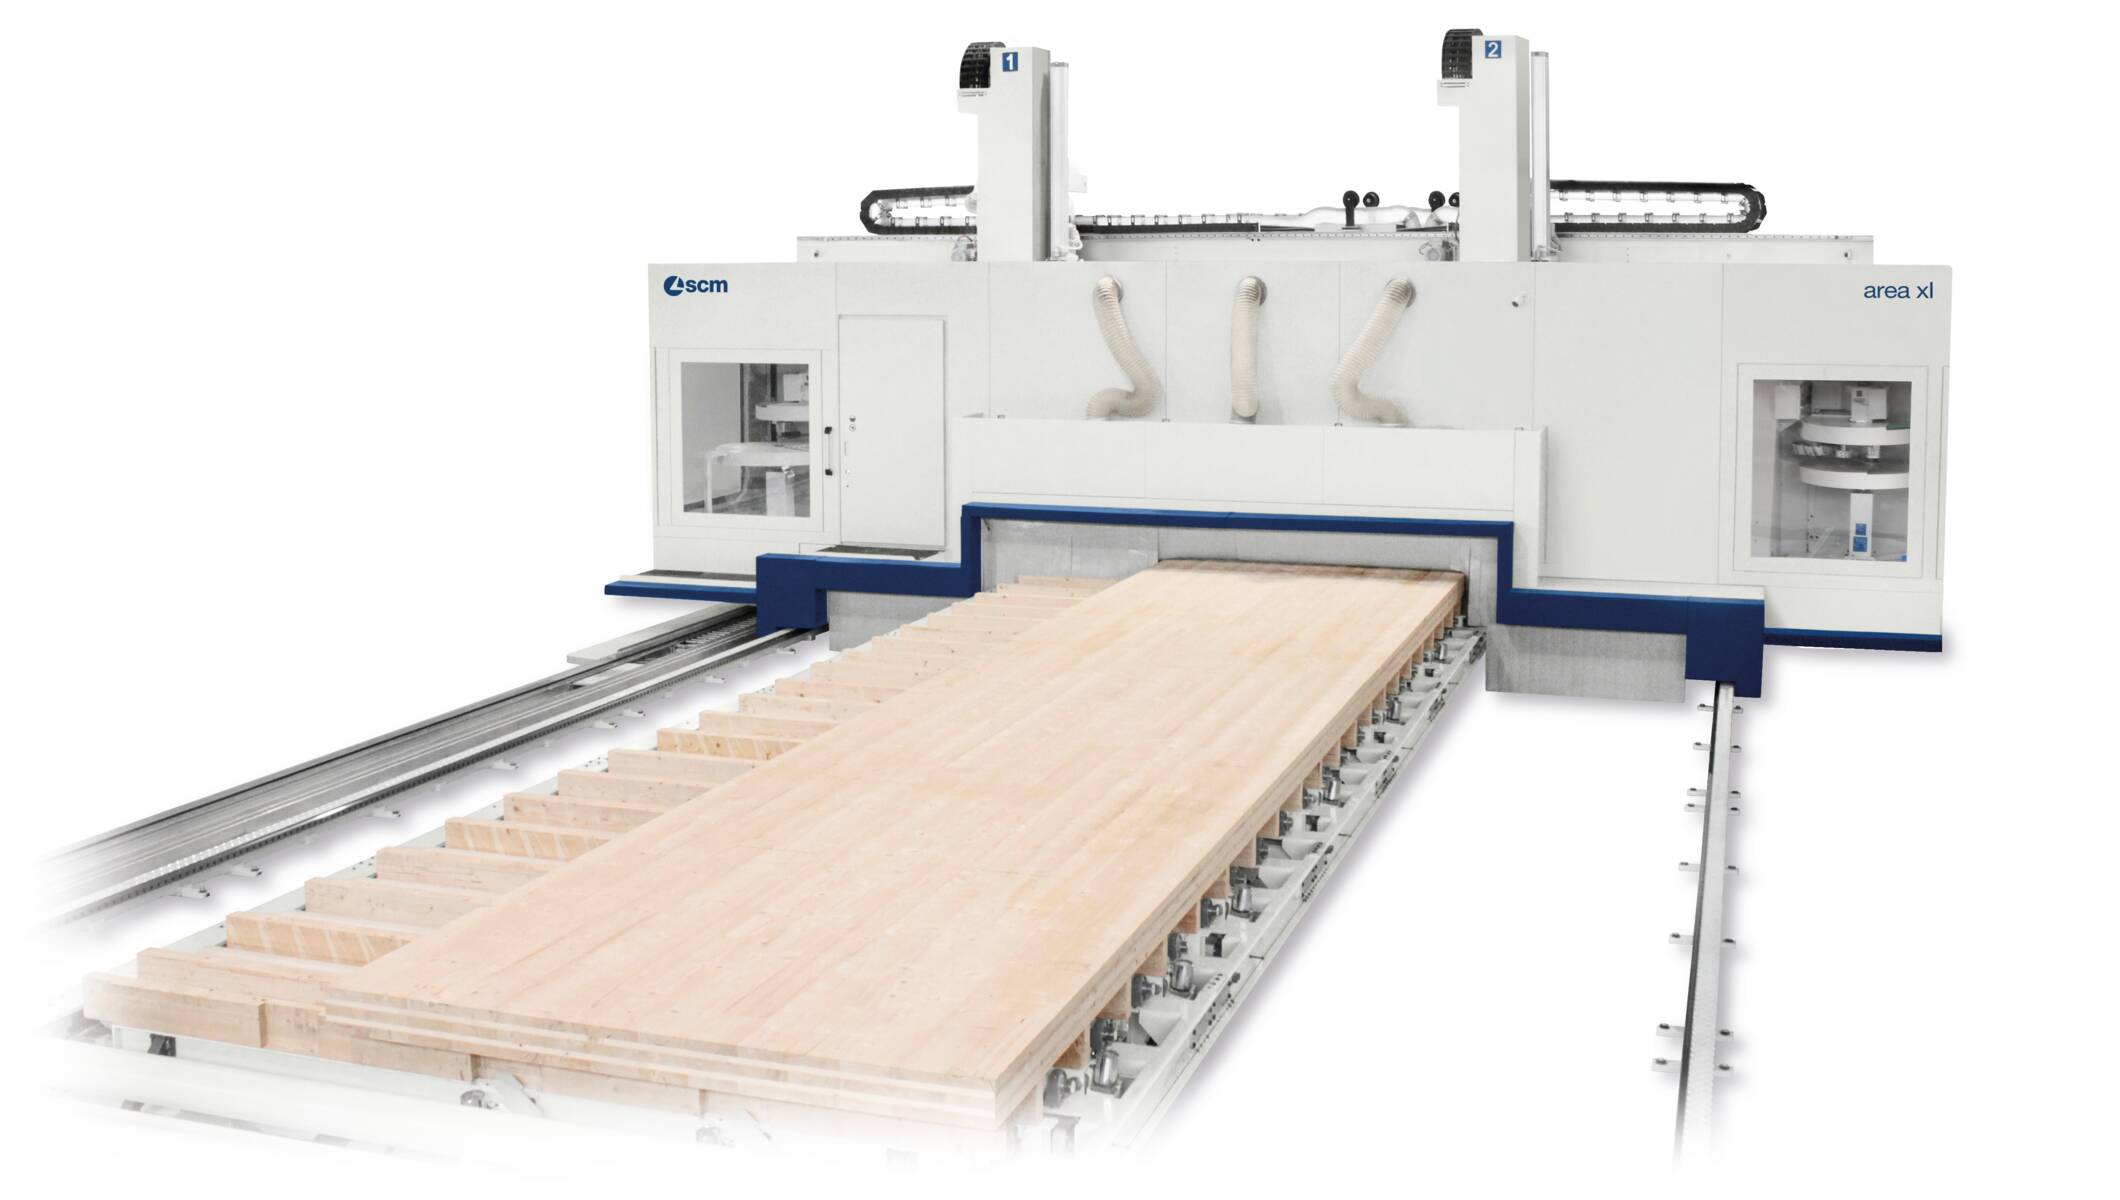 Sistemas para la construcción en madera - CNC - Centro de trabajo para carpinteria - area xl